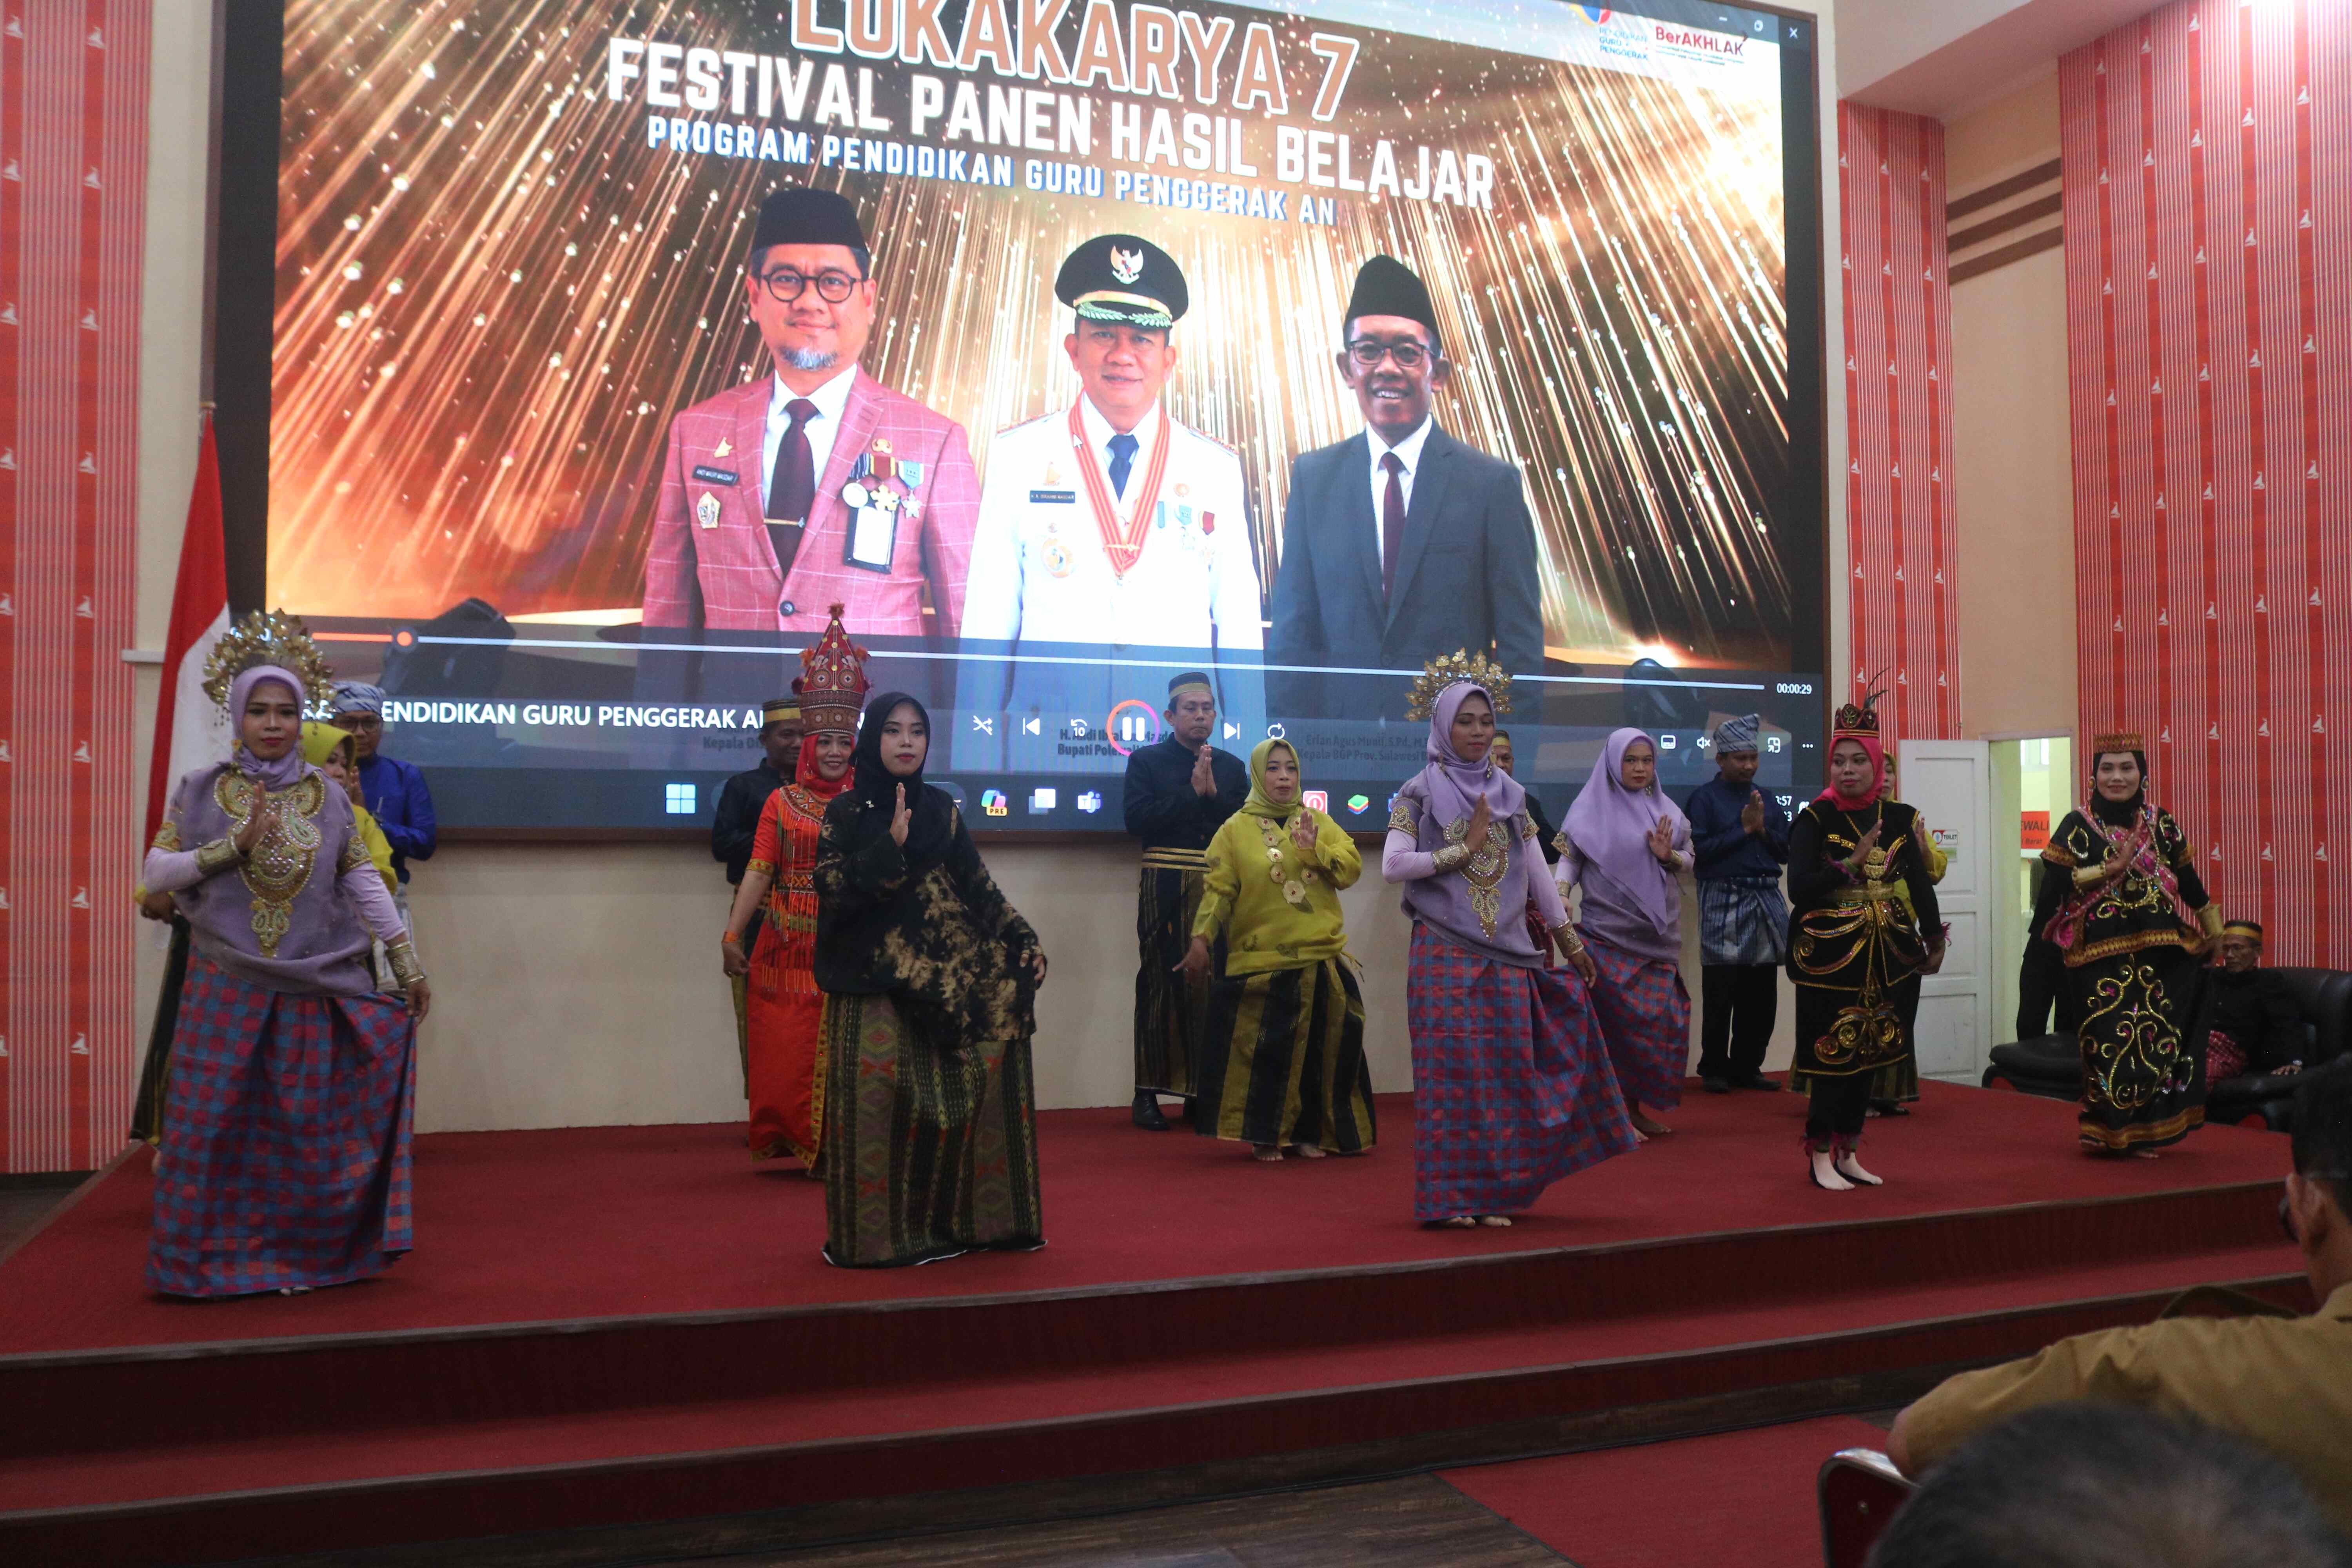 Lokakarya 7 Festival Panen Hasil Belajar Kabupaten Polewali Mandar